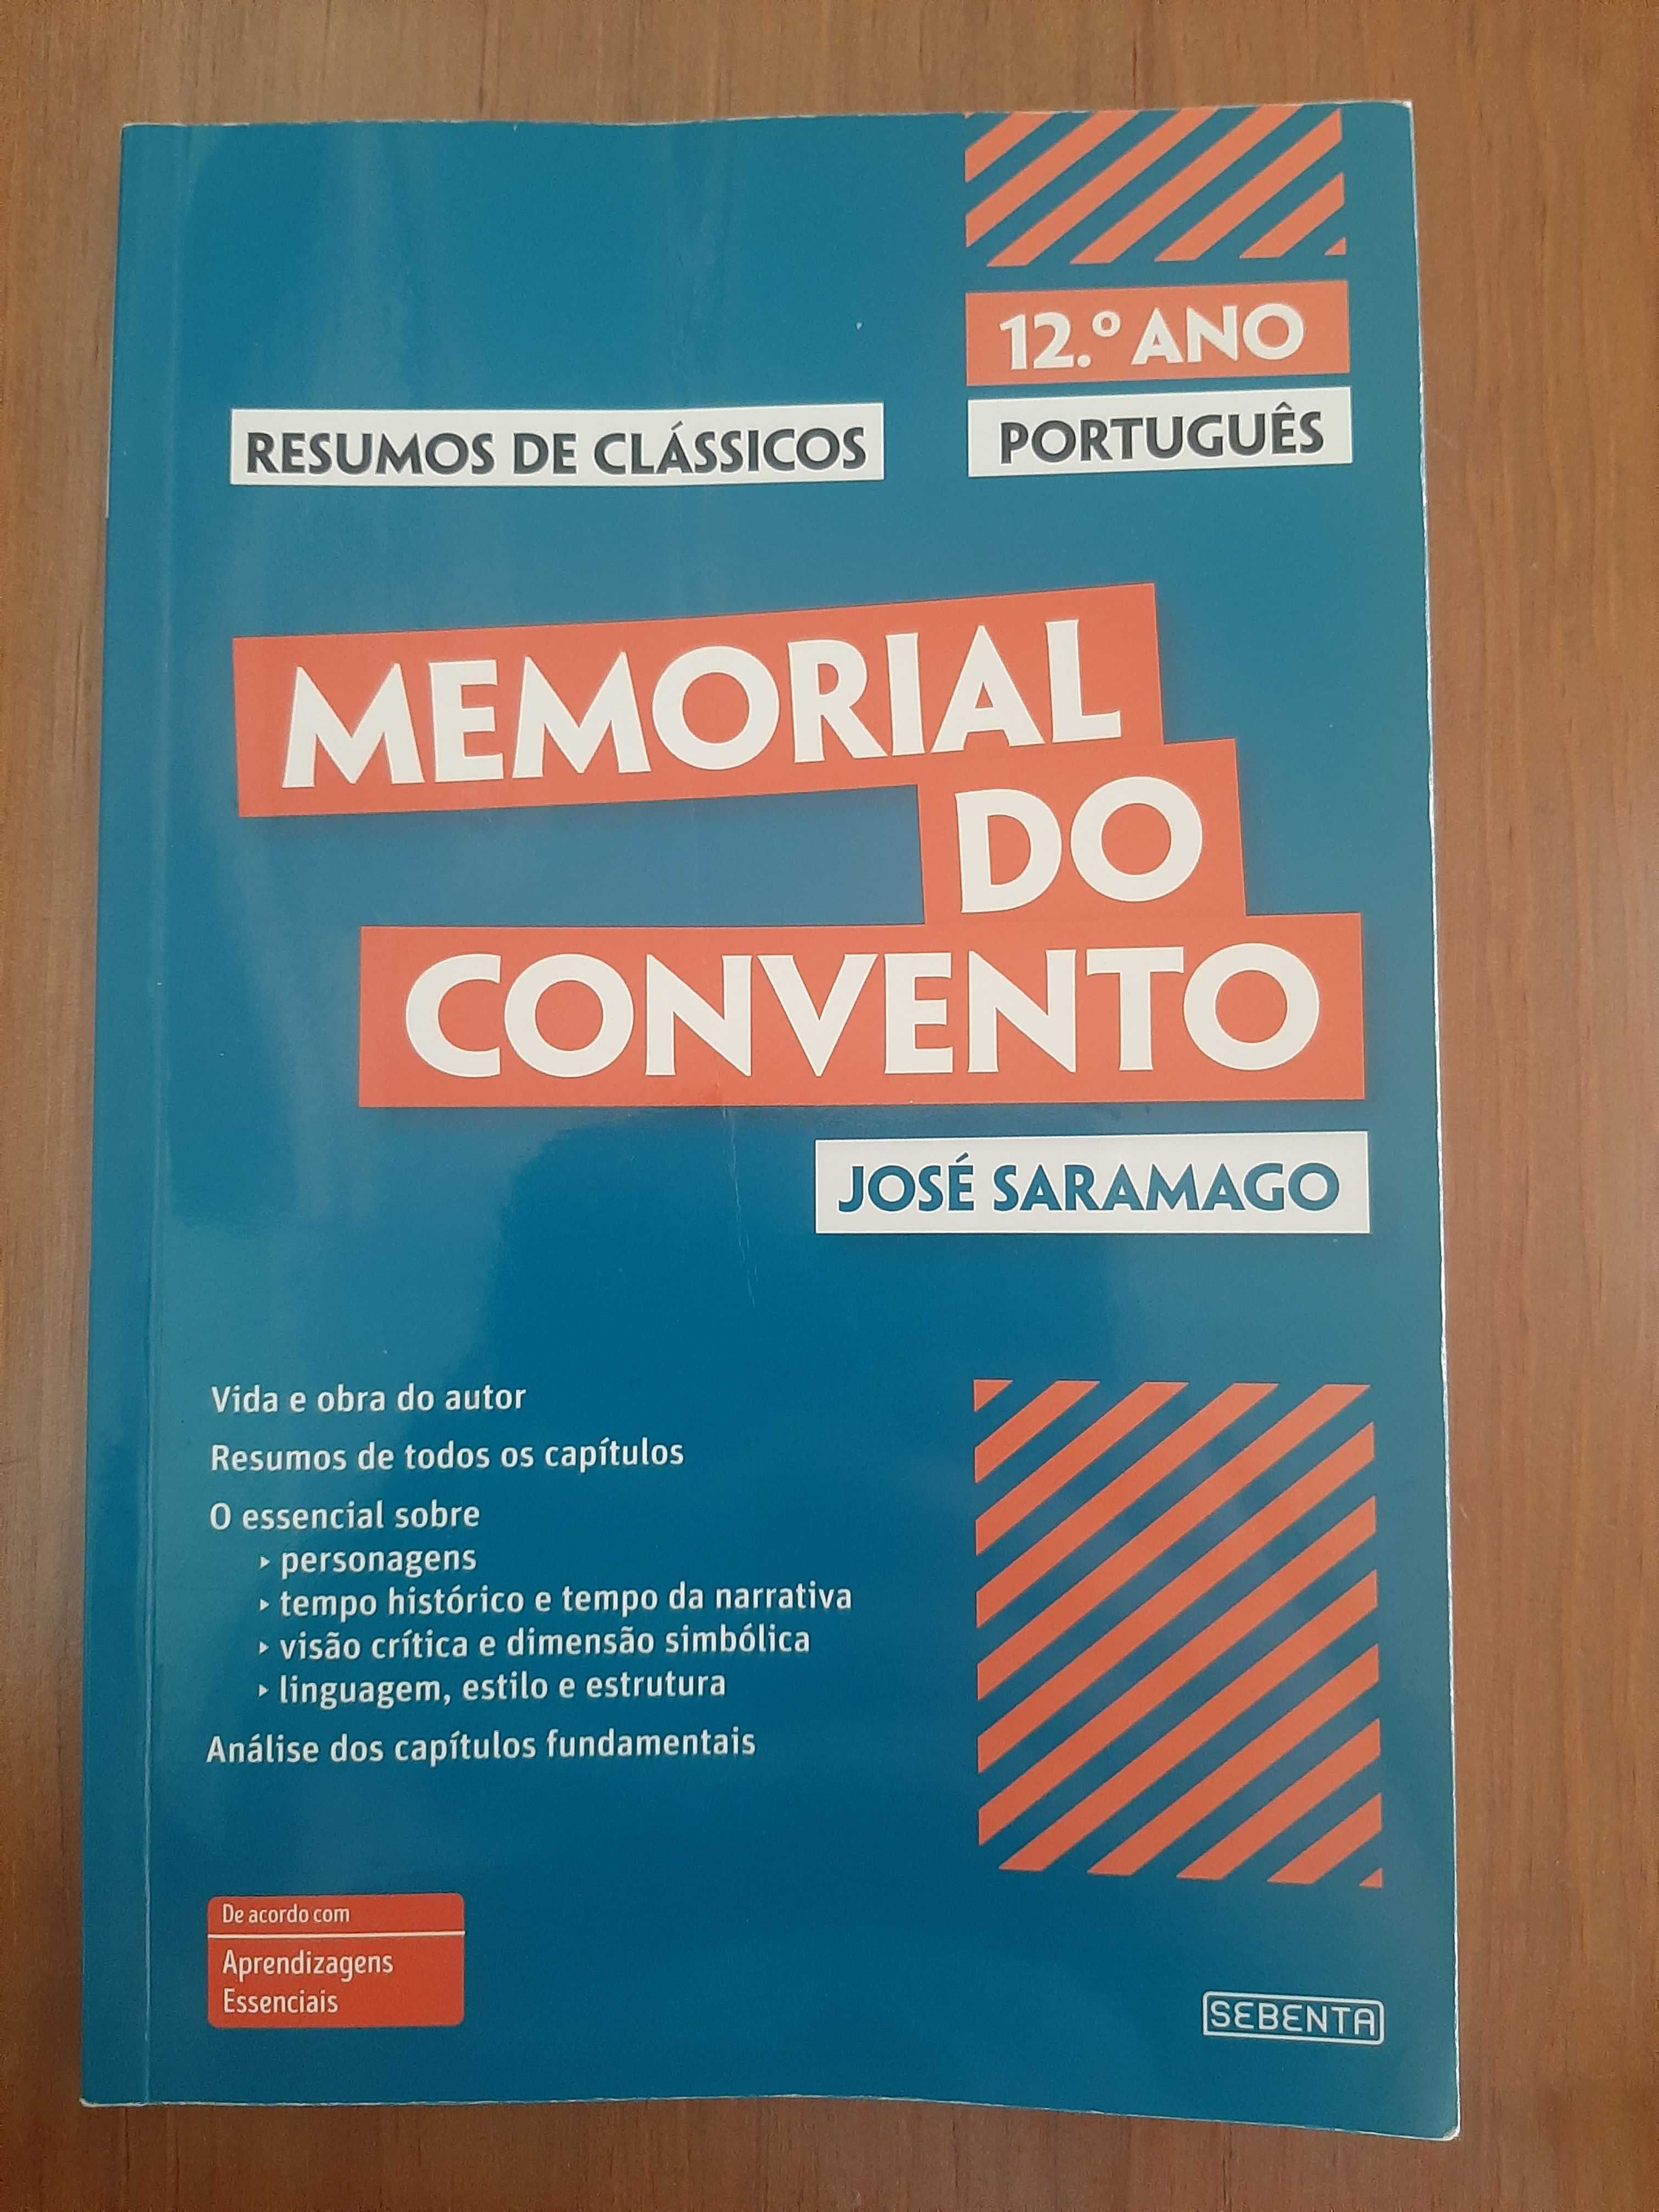 Livros de resumos "Os Maias" e "Memorial do Convento"